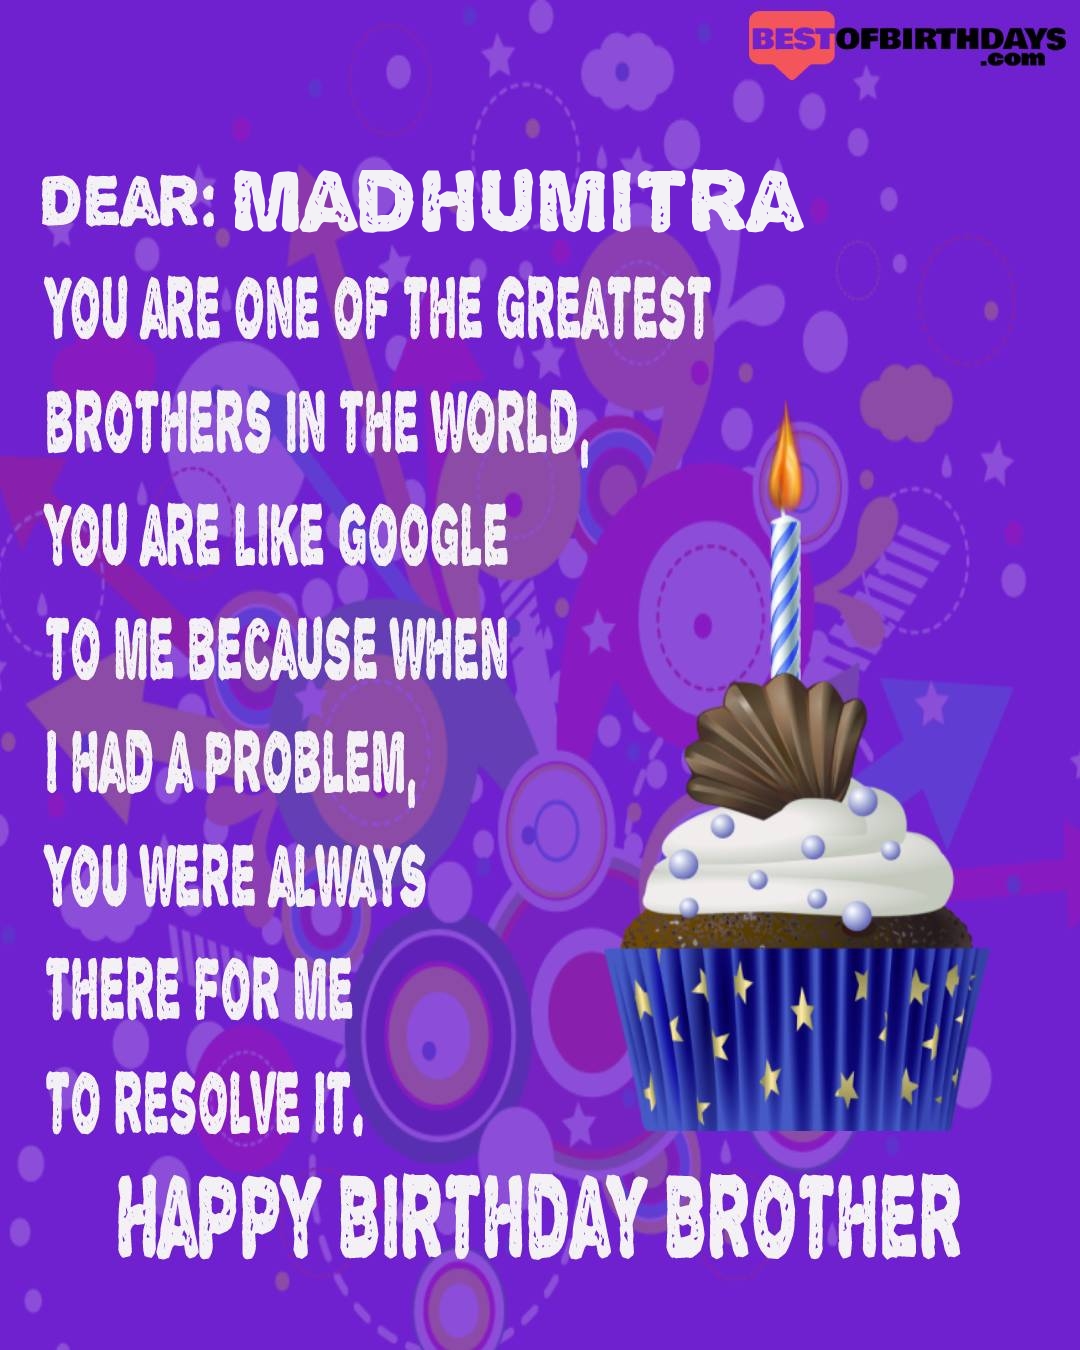 Happy birthday madhumitra bhai brother bro